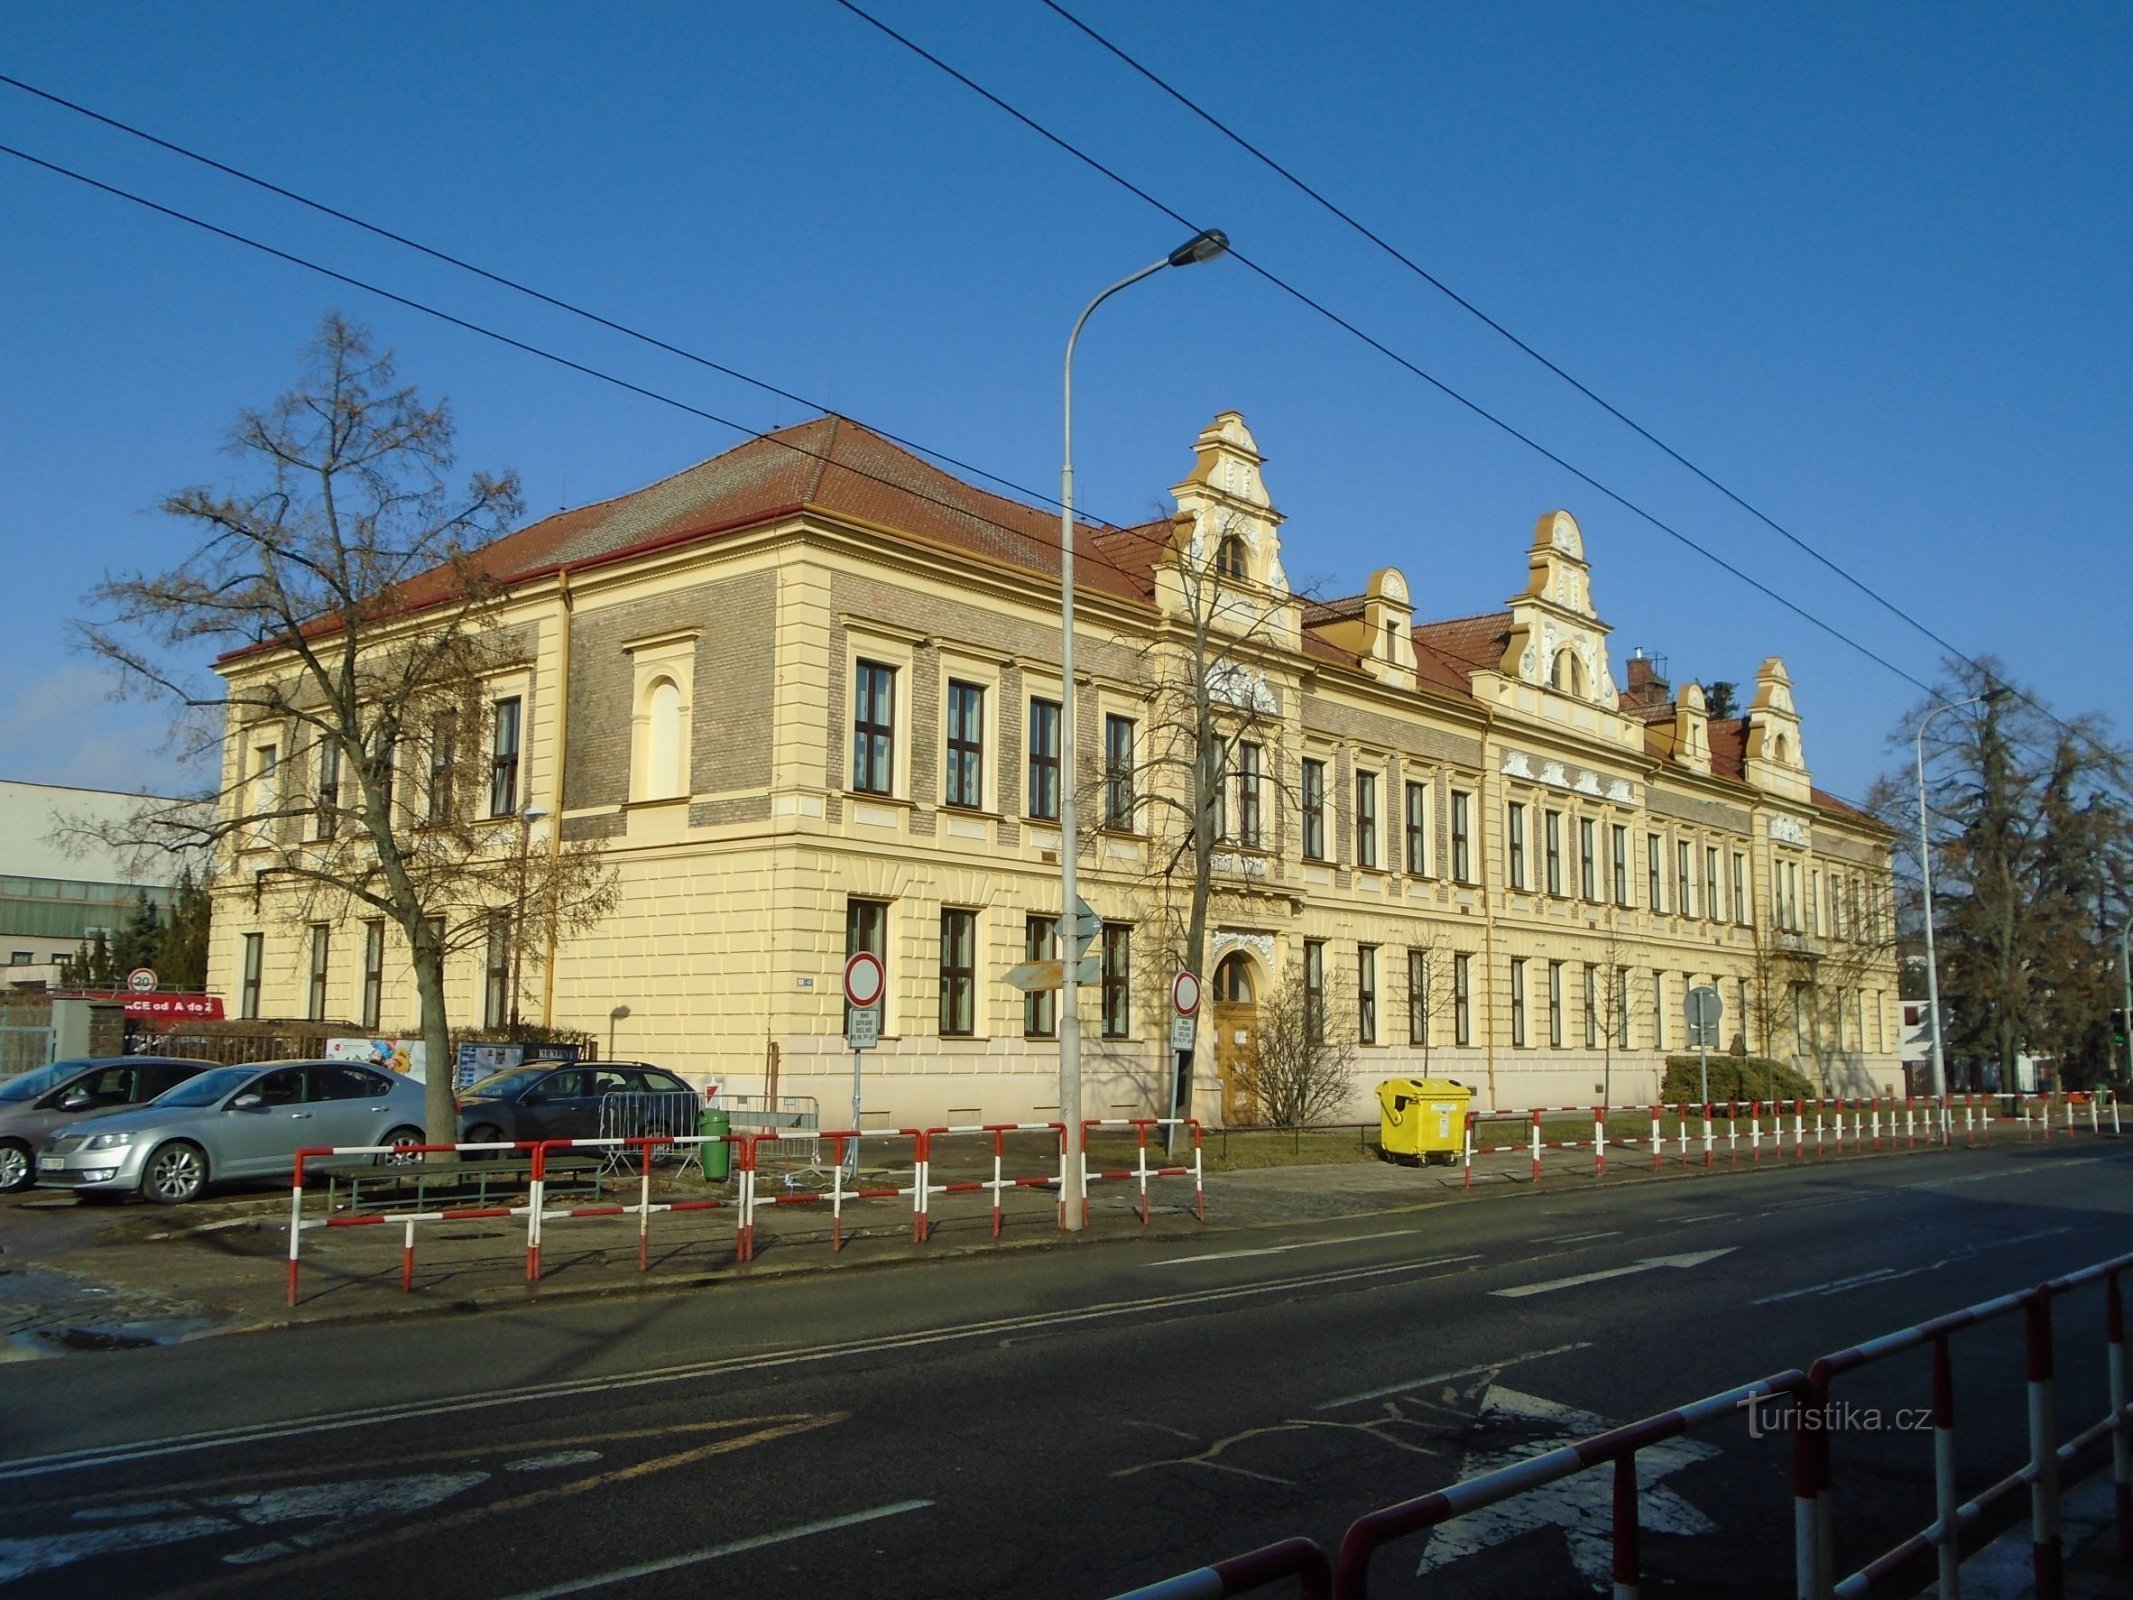 Aspecto actual de la escuela general de Kukleny (Hradec Králové, 8.2.2019 de febrero de XNUMX)